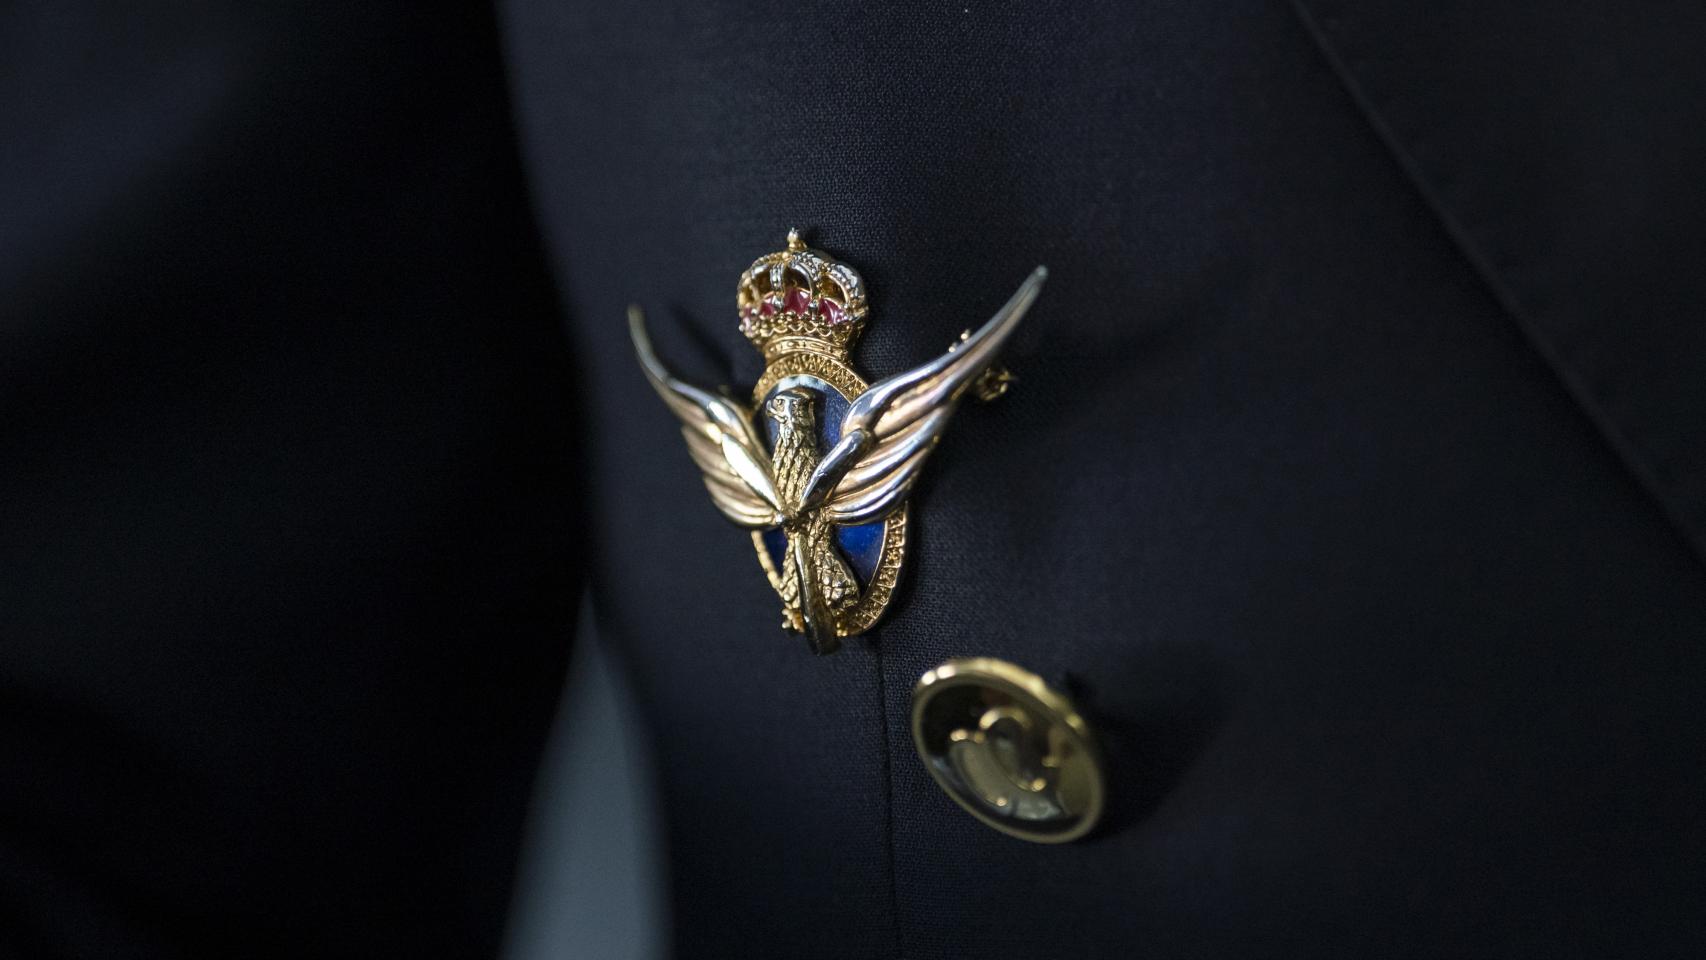 Detalle del pin de piloto comercial en la solapa del traje de Alfonso de Bertodano.